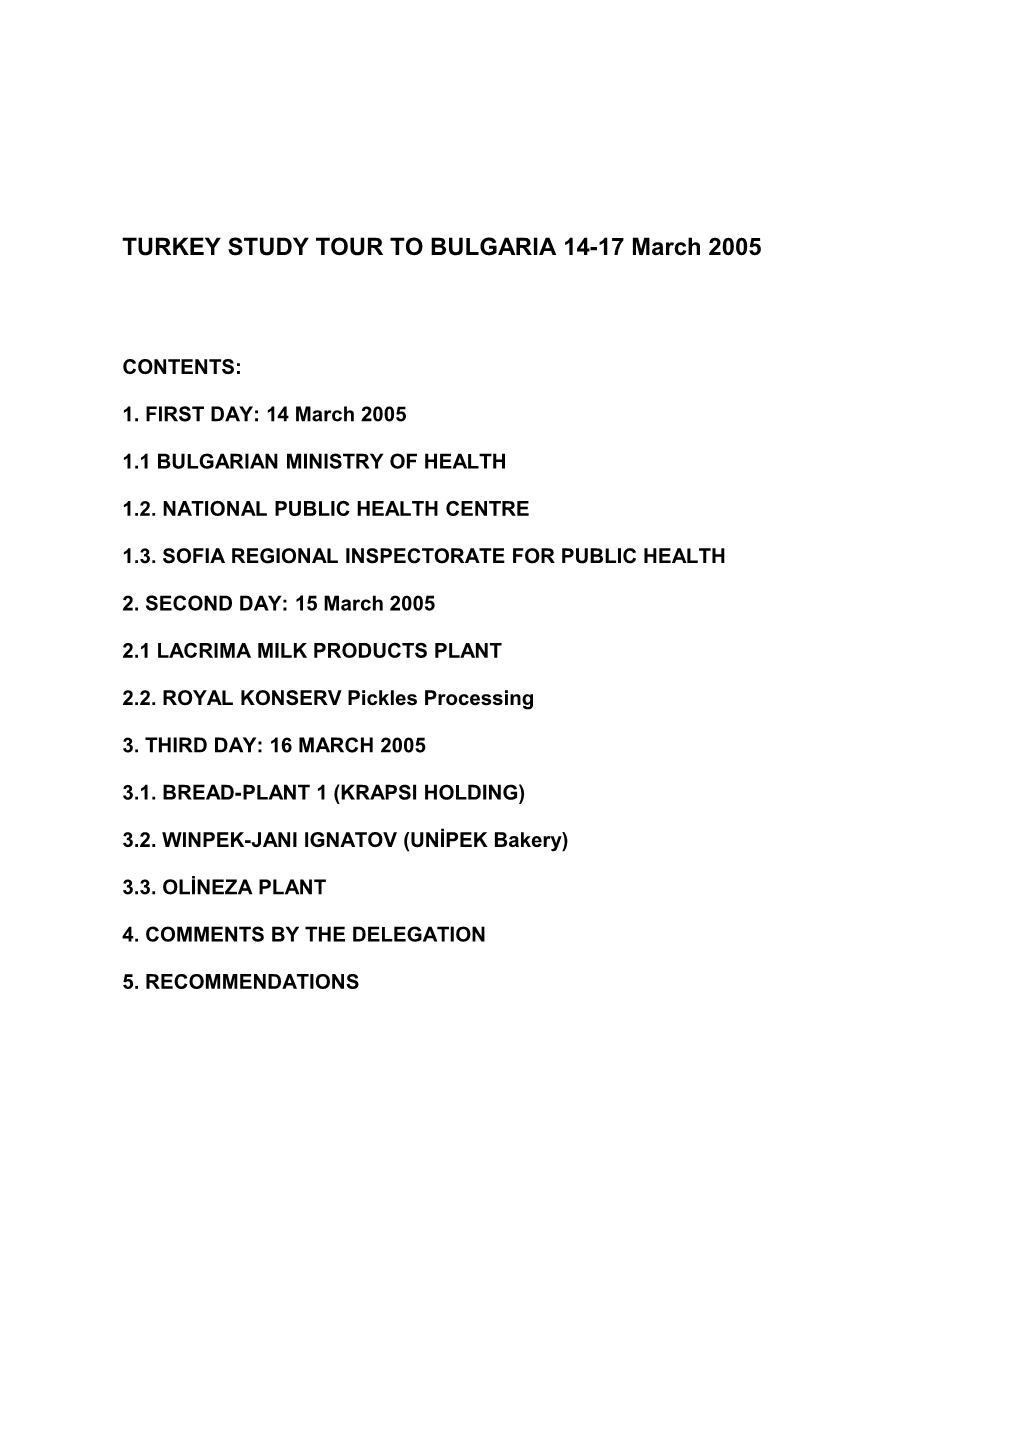 TURKEYSTUDY TOUR to BULGARIA 14-17 March 2005